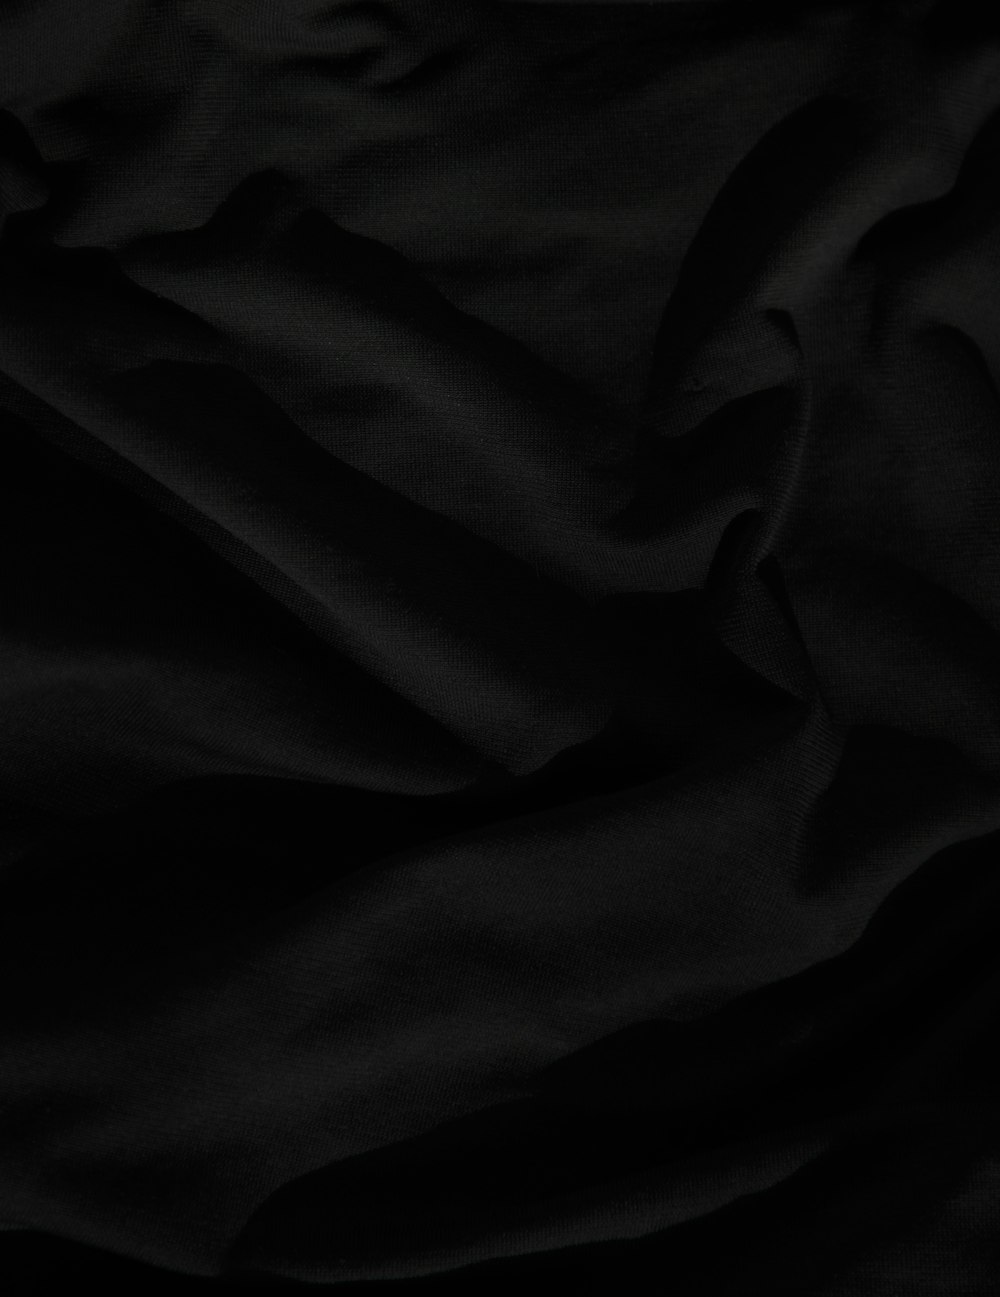 plain black background portrait